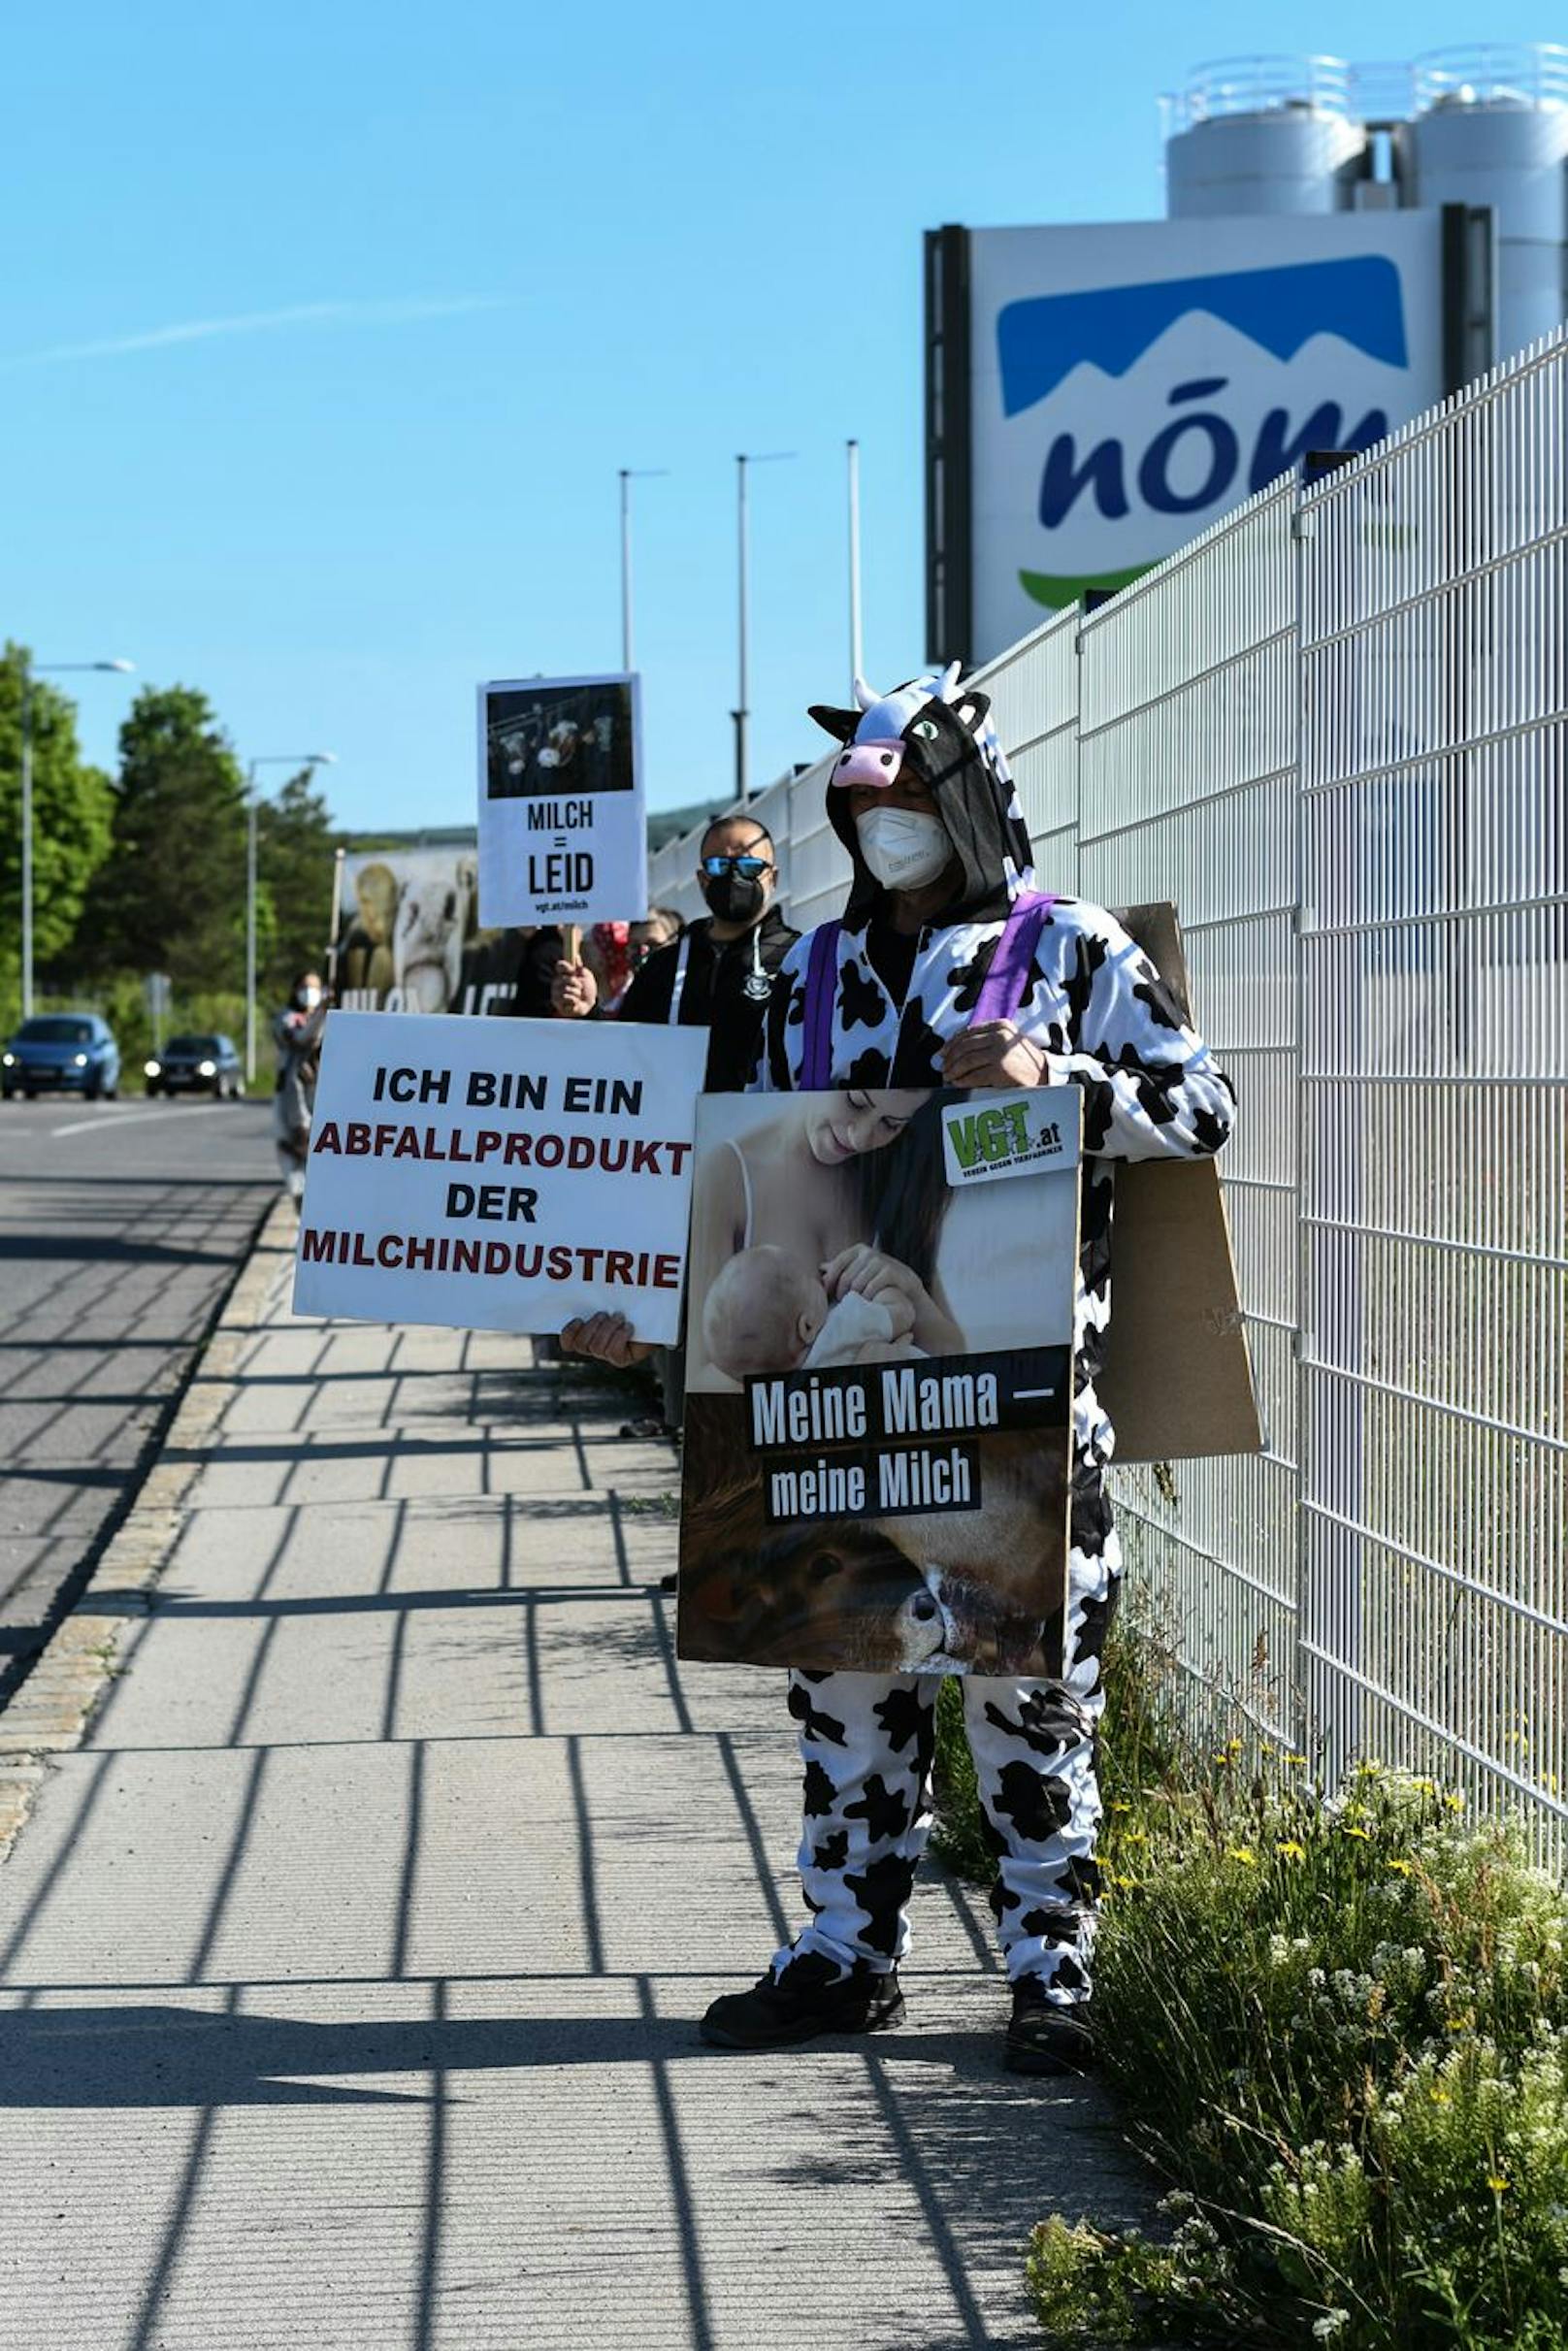 Die Aktivisten des VGT (Verein gegen Tierfabriken) wollen so auf die Schattenseiten der Milchindustrie aufmerksam machen. 